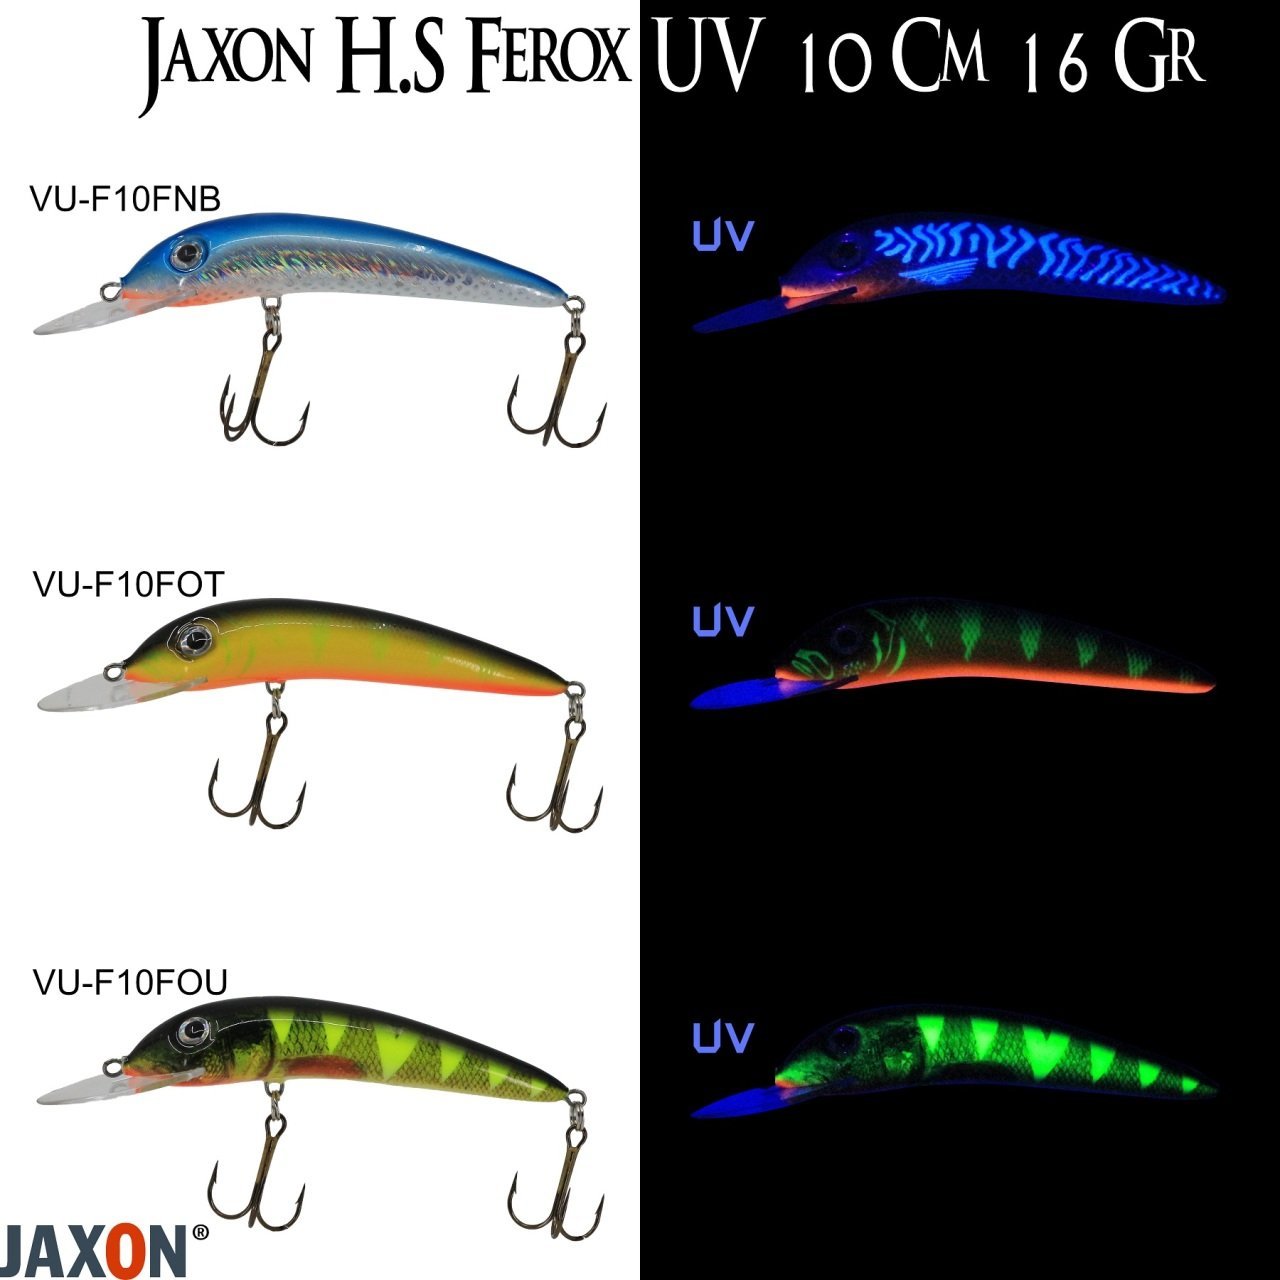 Jaxon H.S Ferox UV 10 Cm 16 Gr Fot